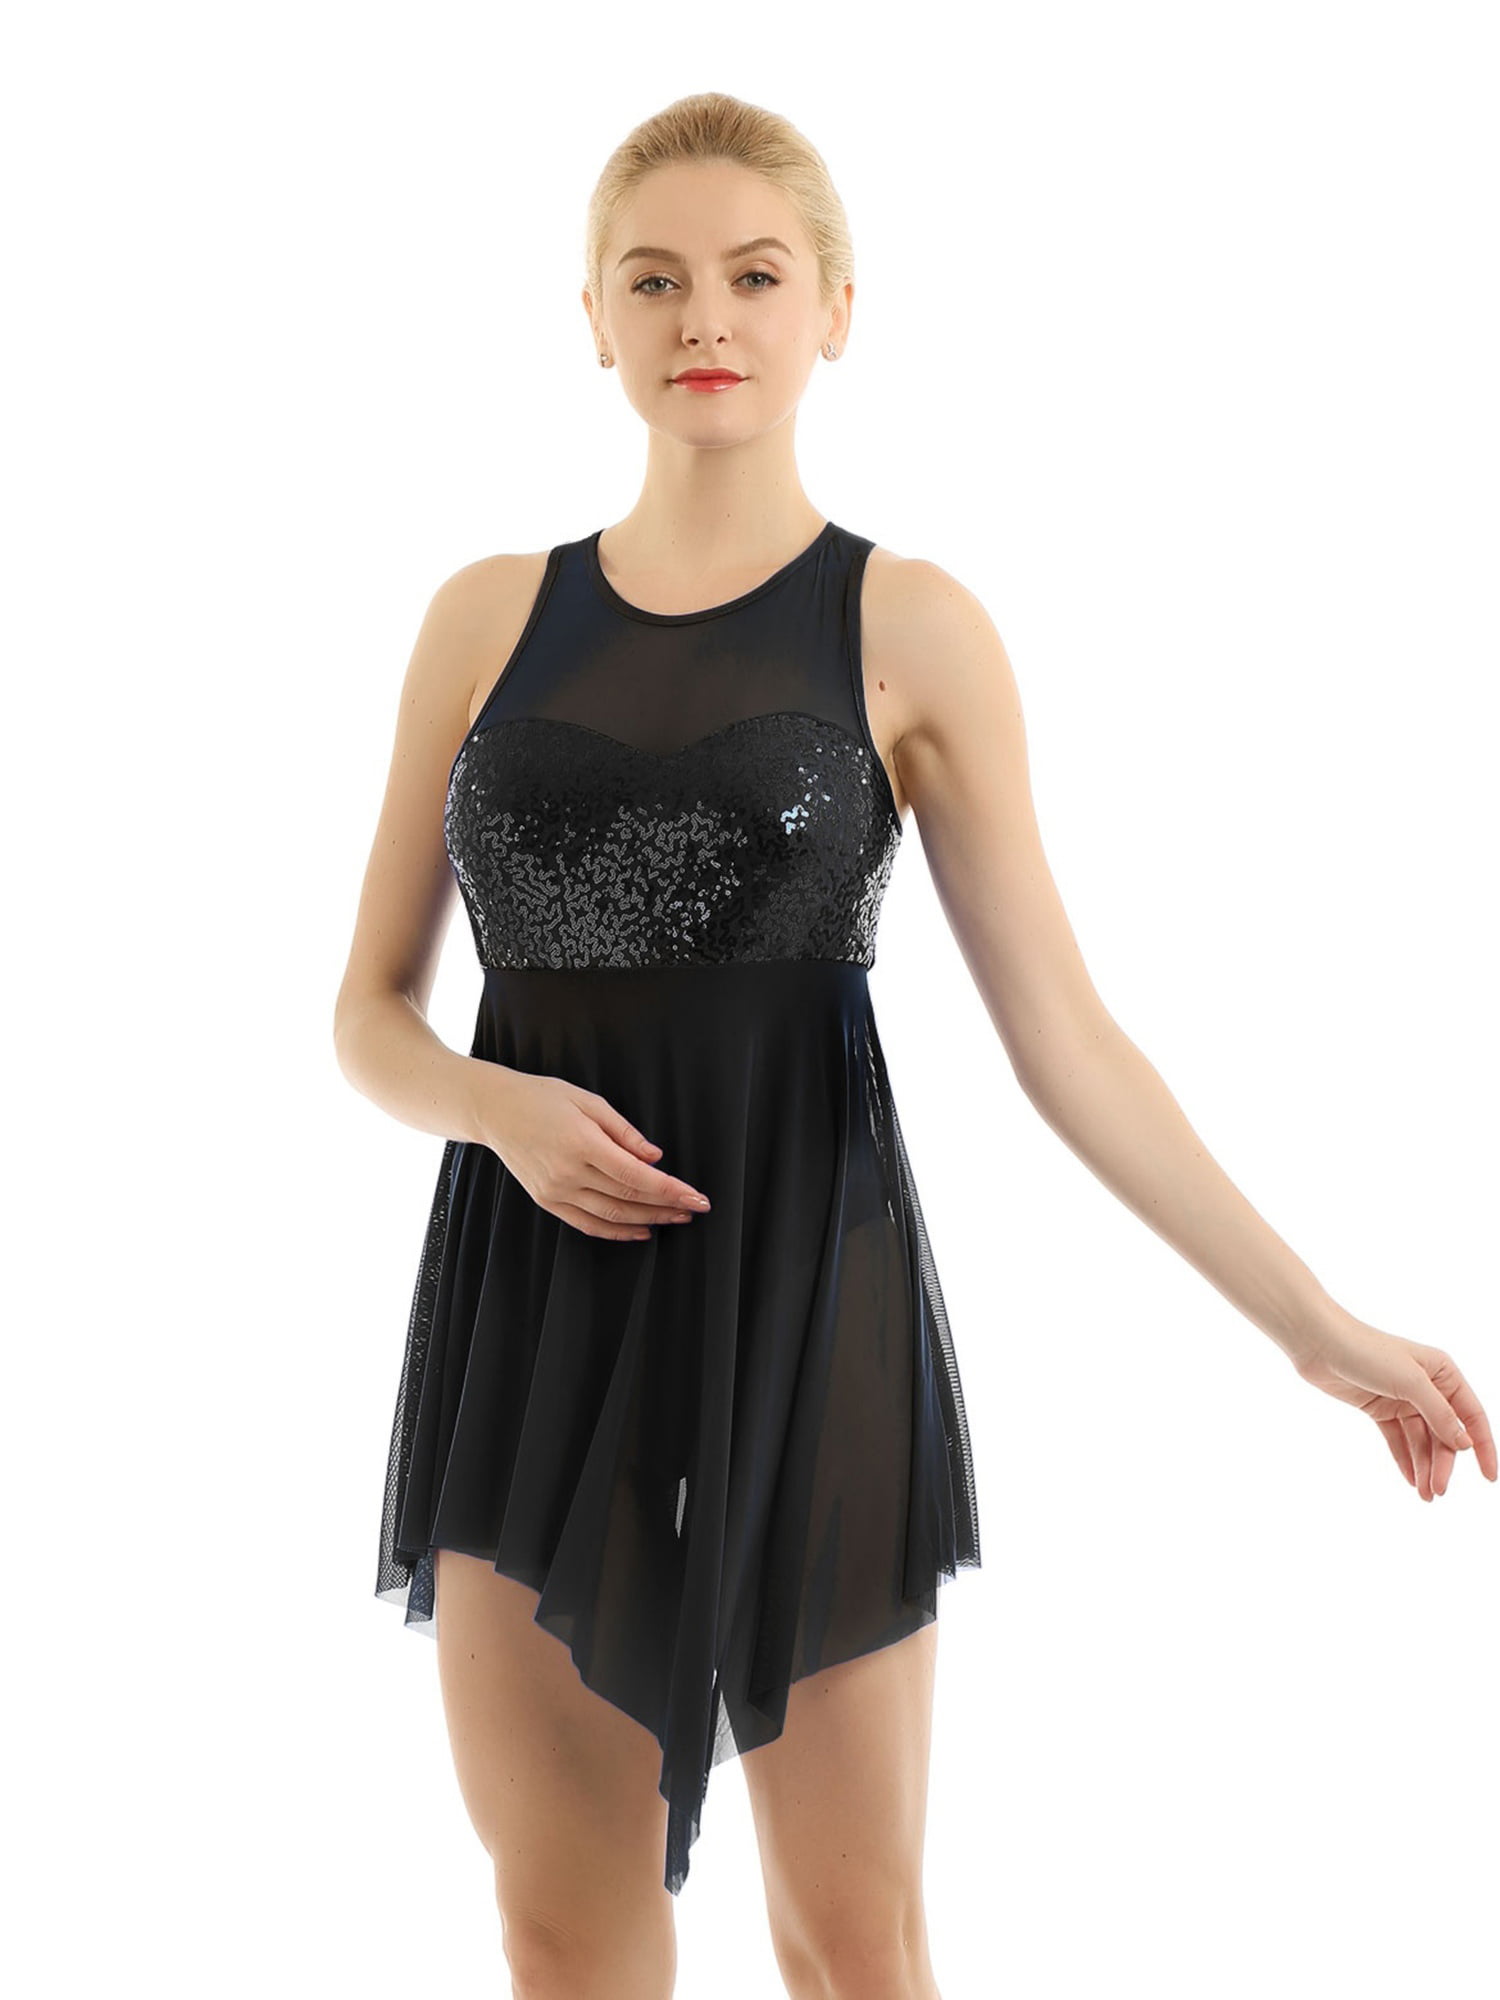 Women's Adult Tulle Latin Ballet Dance Tutu Skirt Glitter Asymmetric Short Dress 